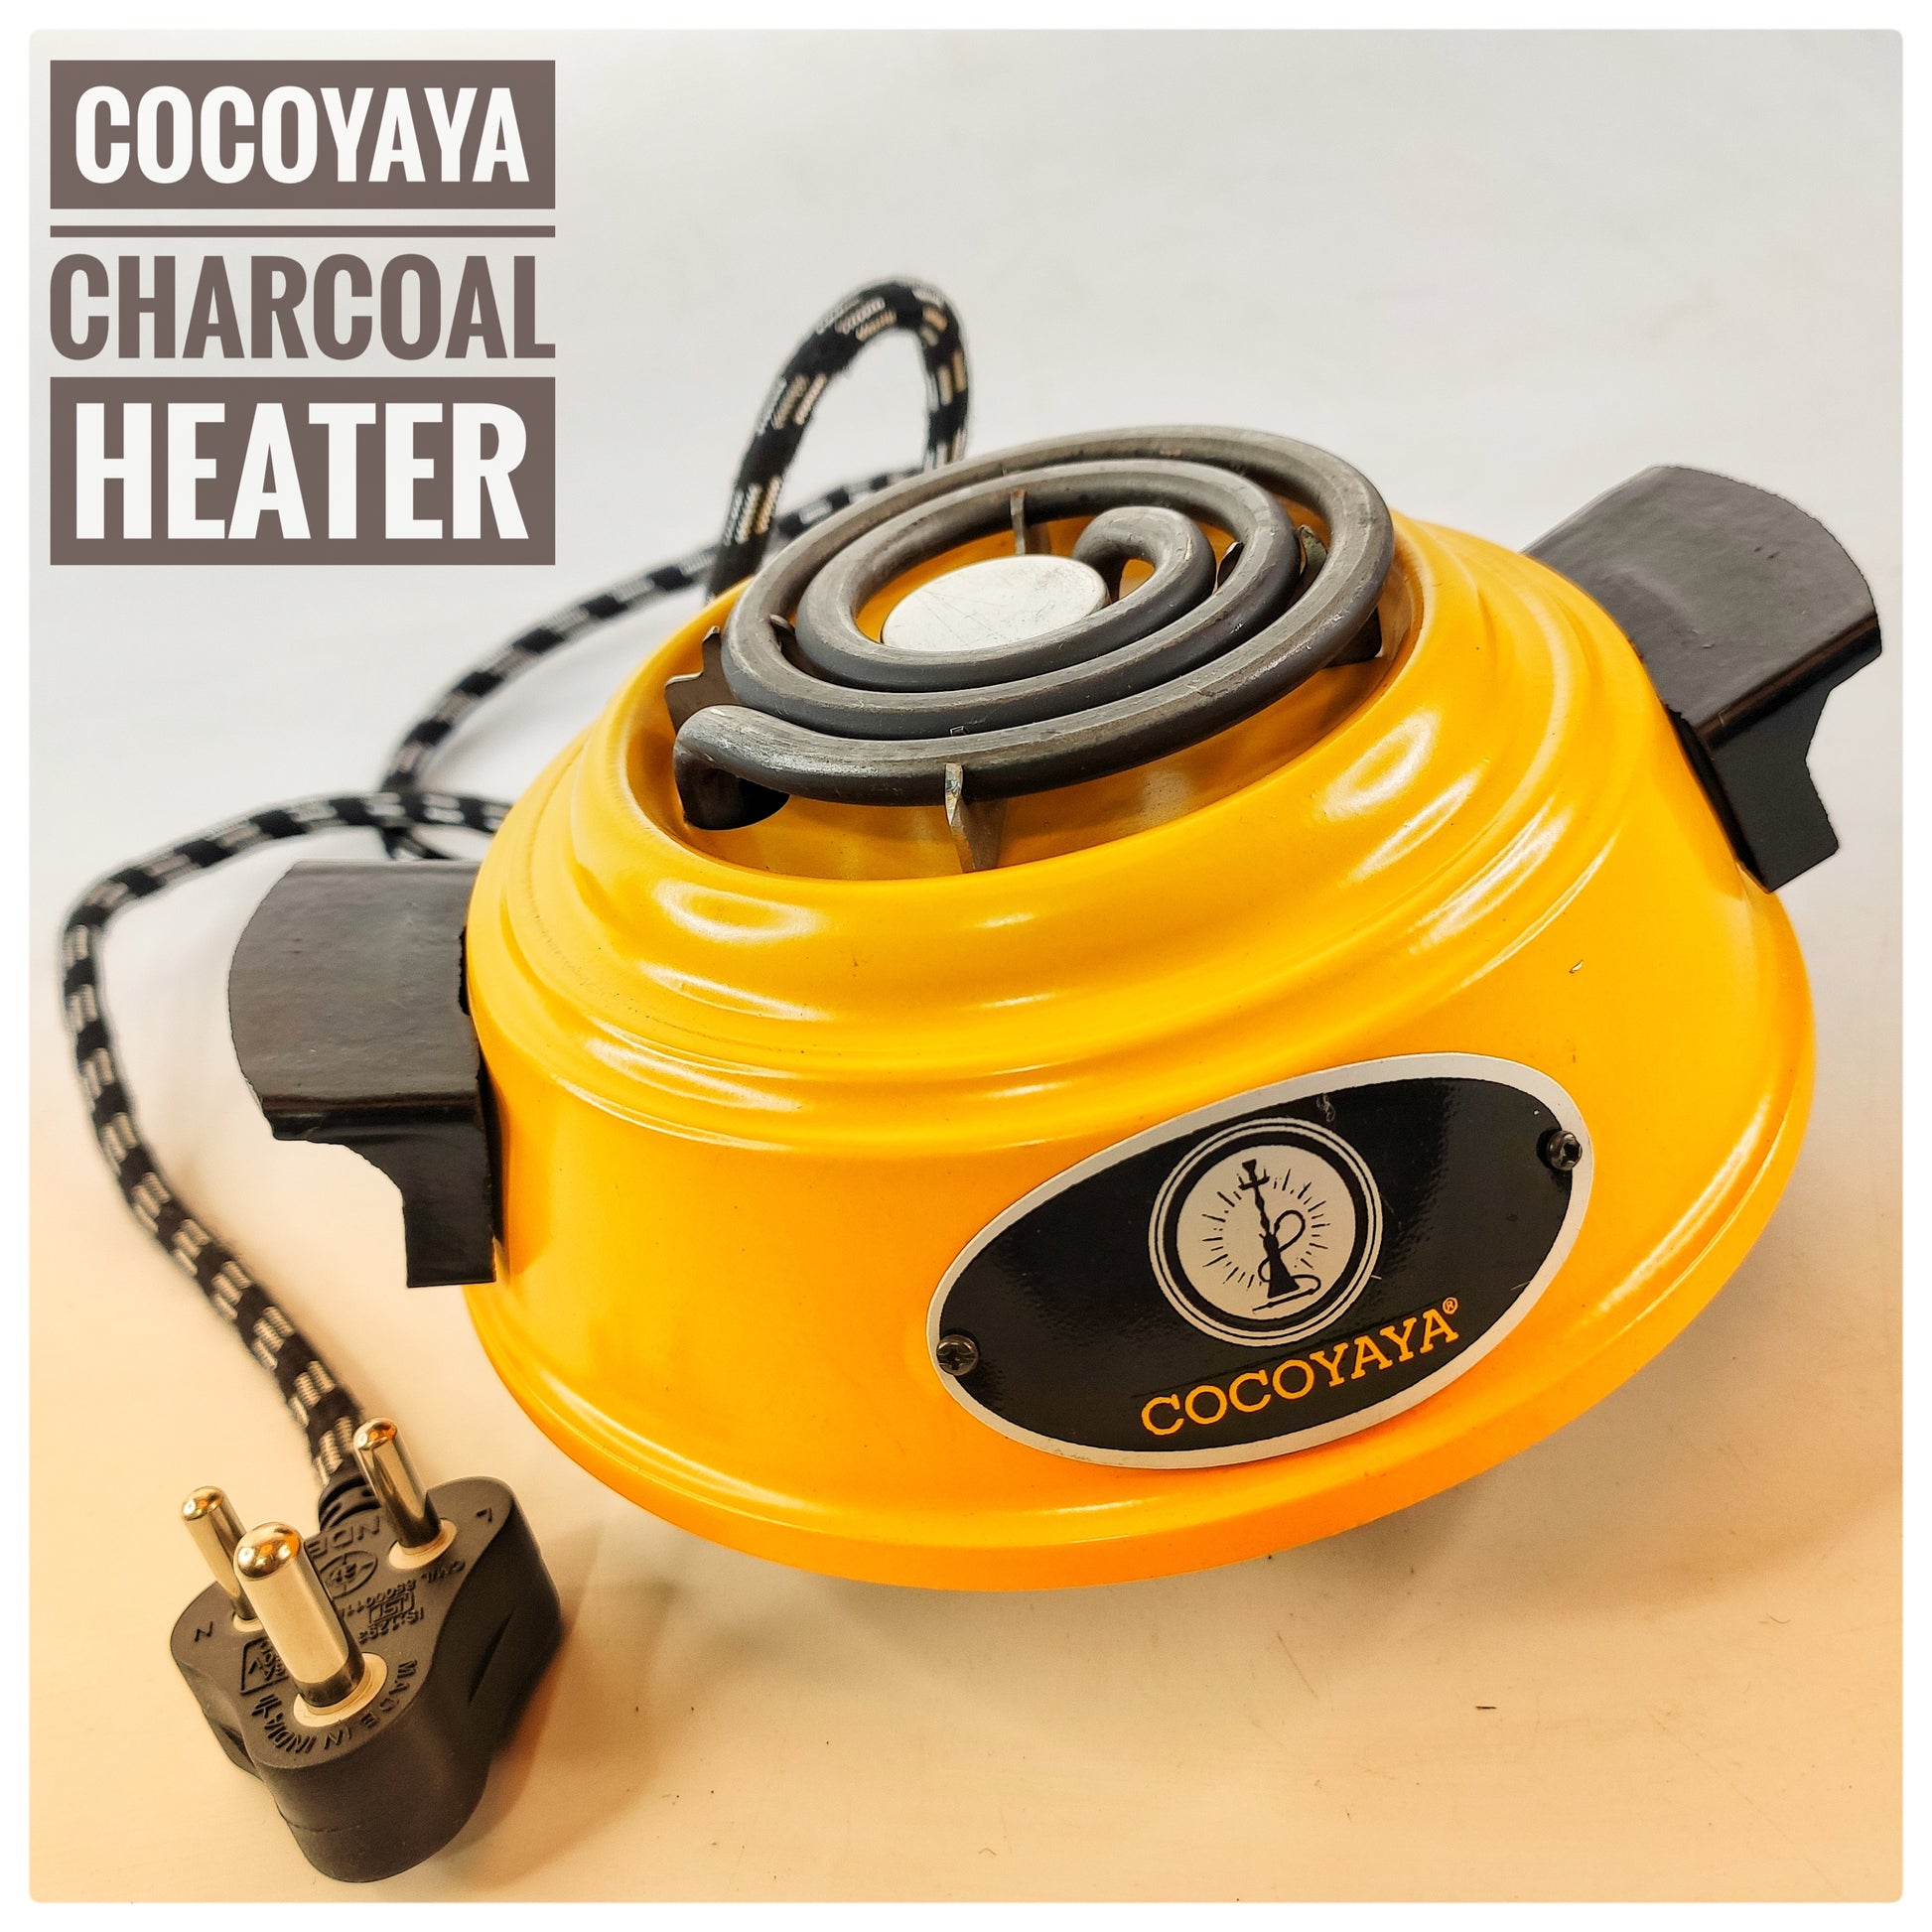 COCOYAYA Hookah Coal Heater Charcoal Burner - 500 Watt